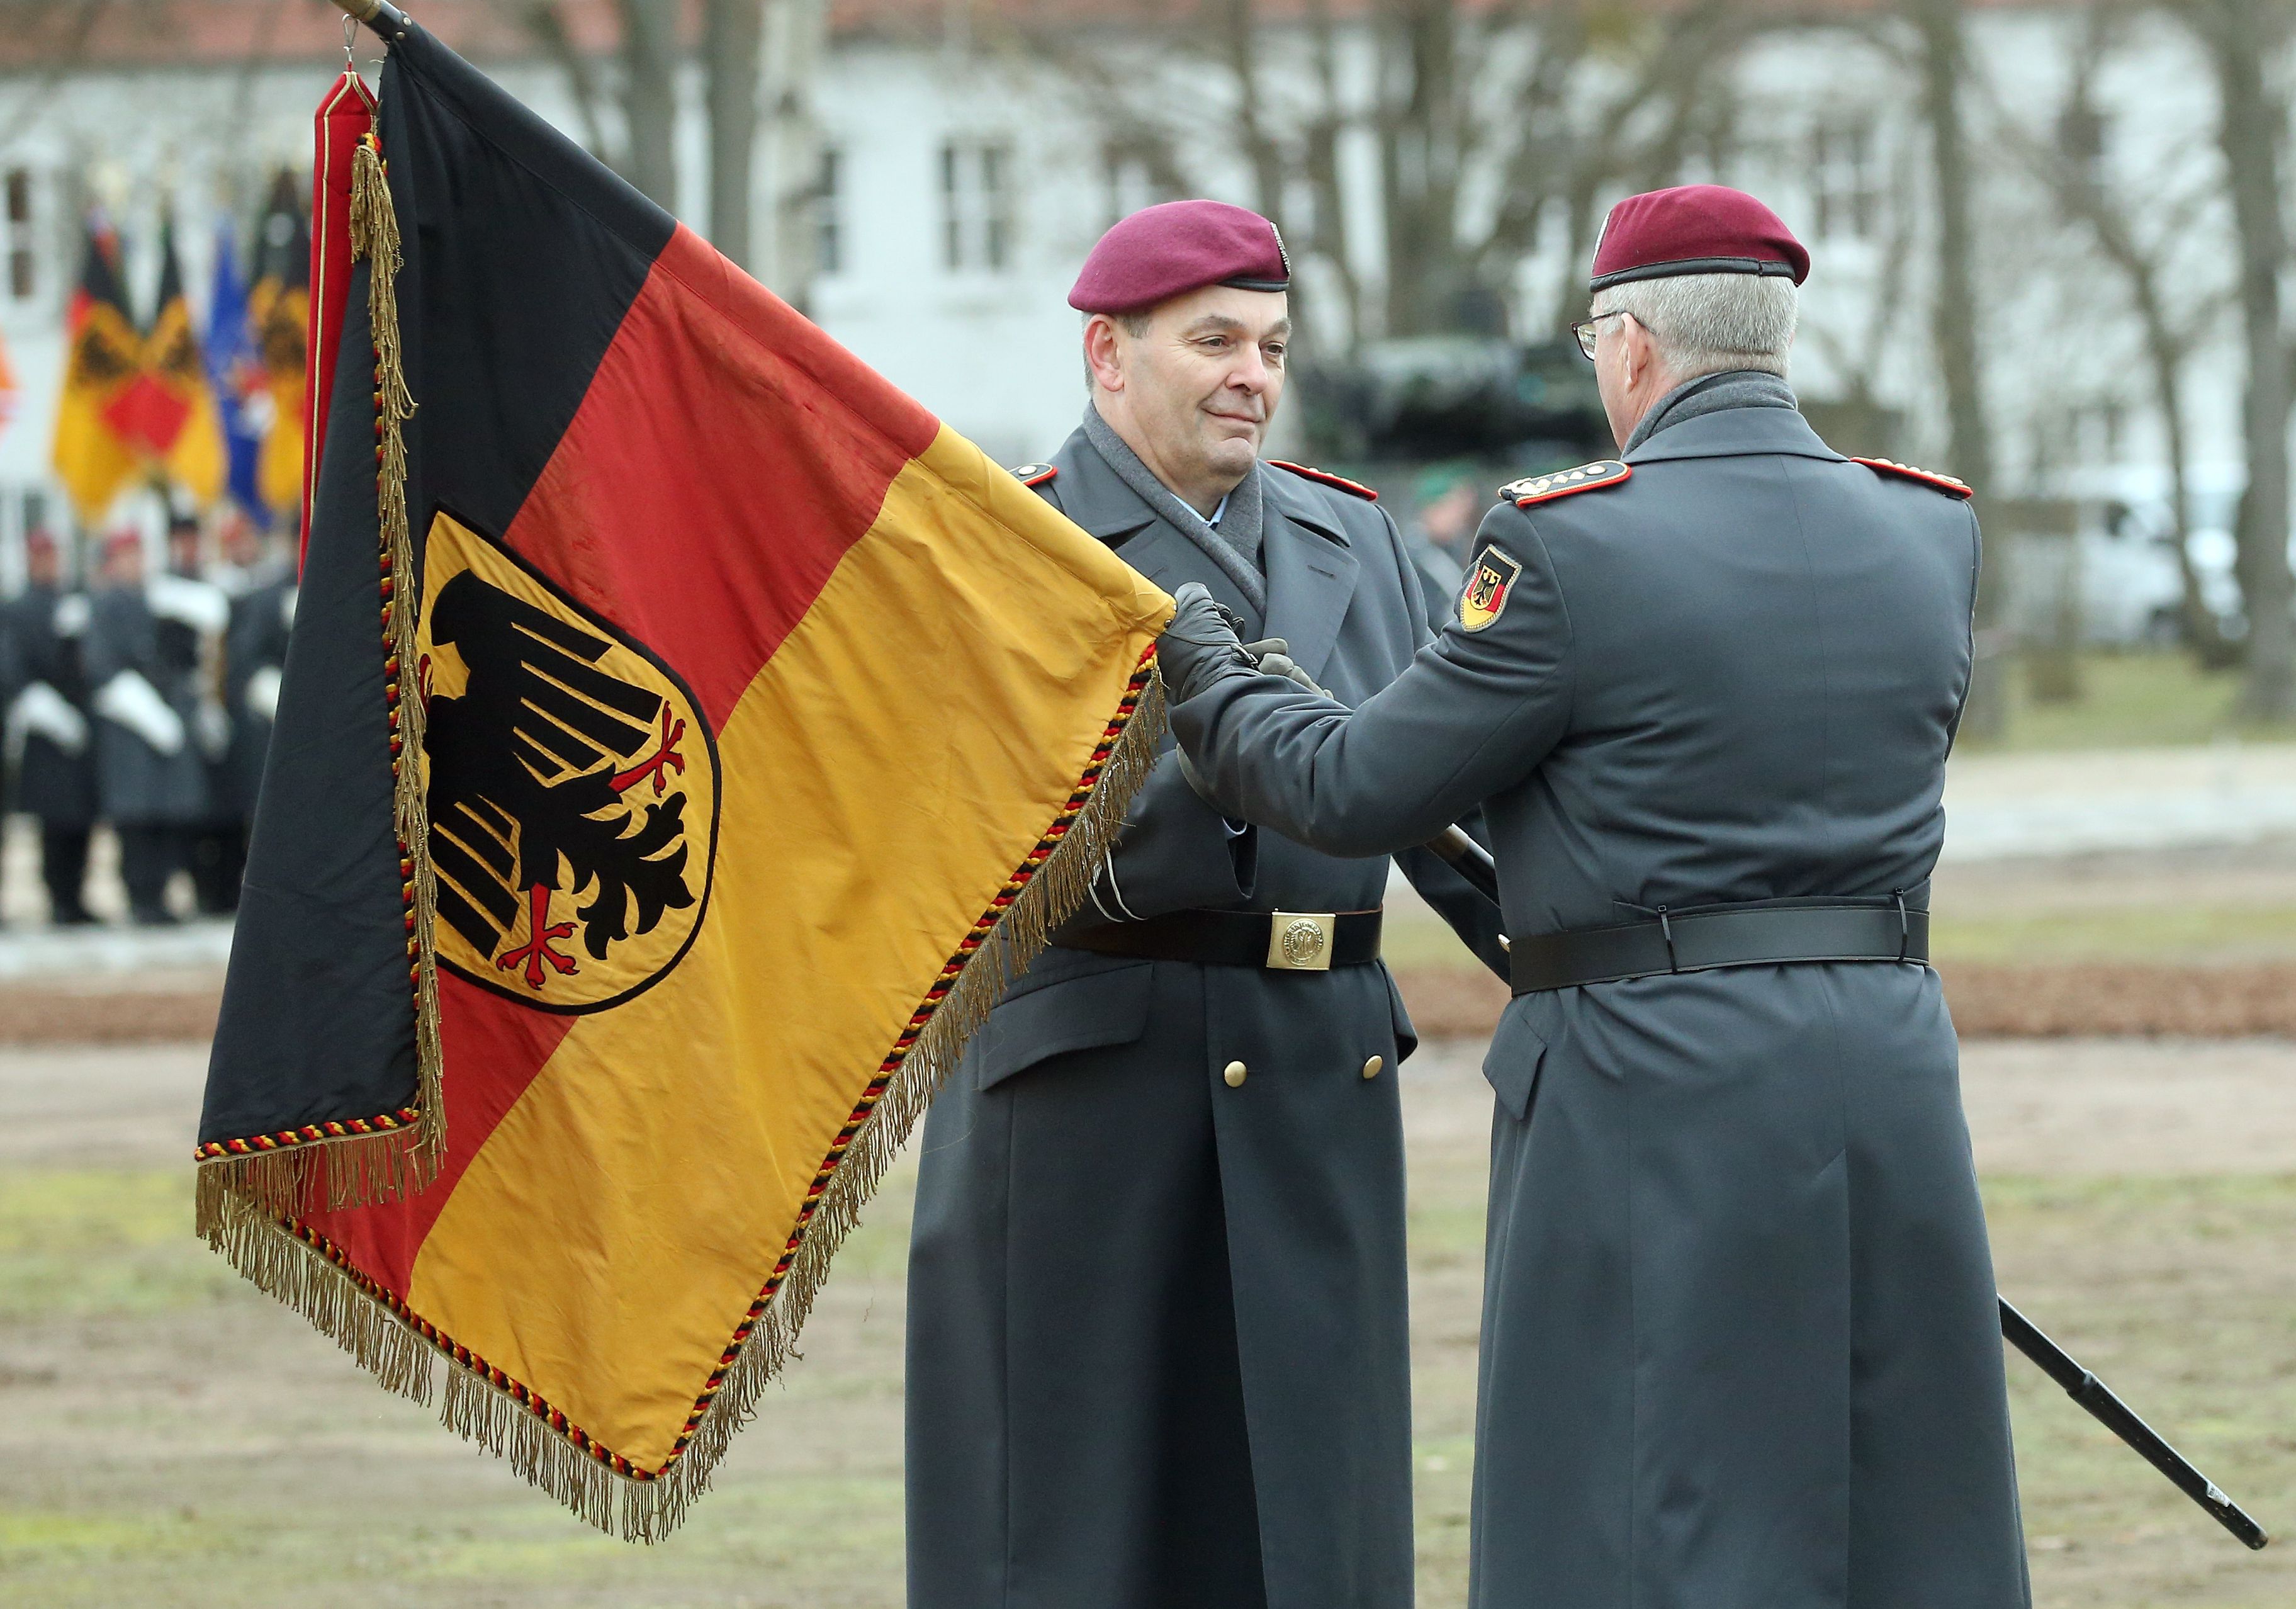 Vremurile bune sunt pe sfârşite: Germania ia în considerare reintroducerea serviciului militar obligatoriu. „Obiectivul nostru este să restructurăm armata astfel încât să fie bine poziţionată pentru apărare în caz de război”